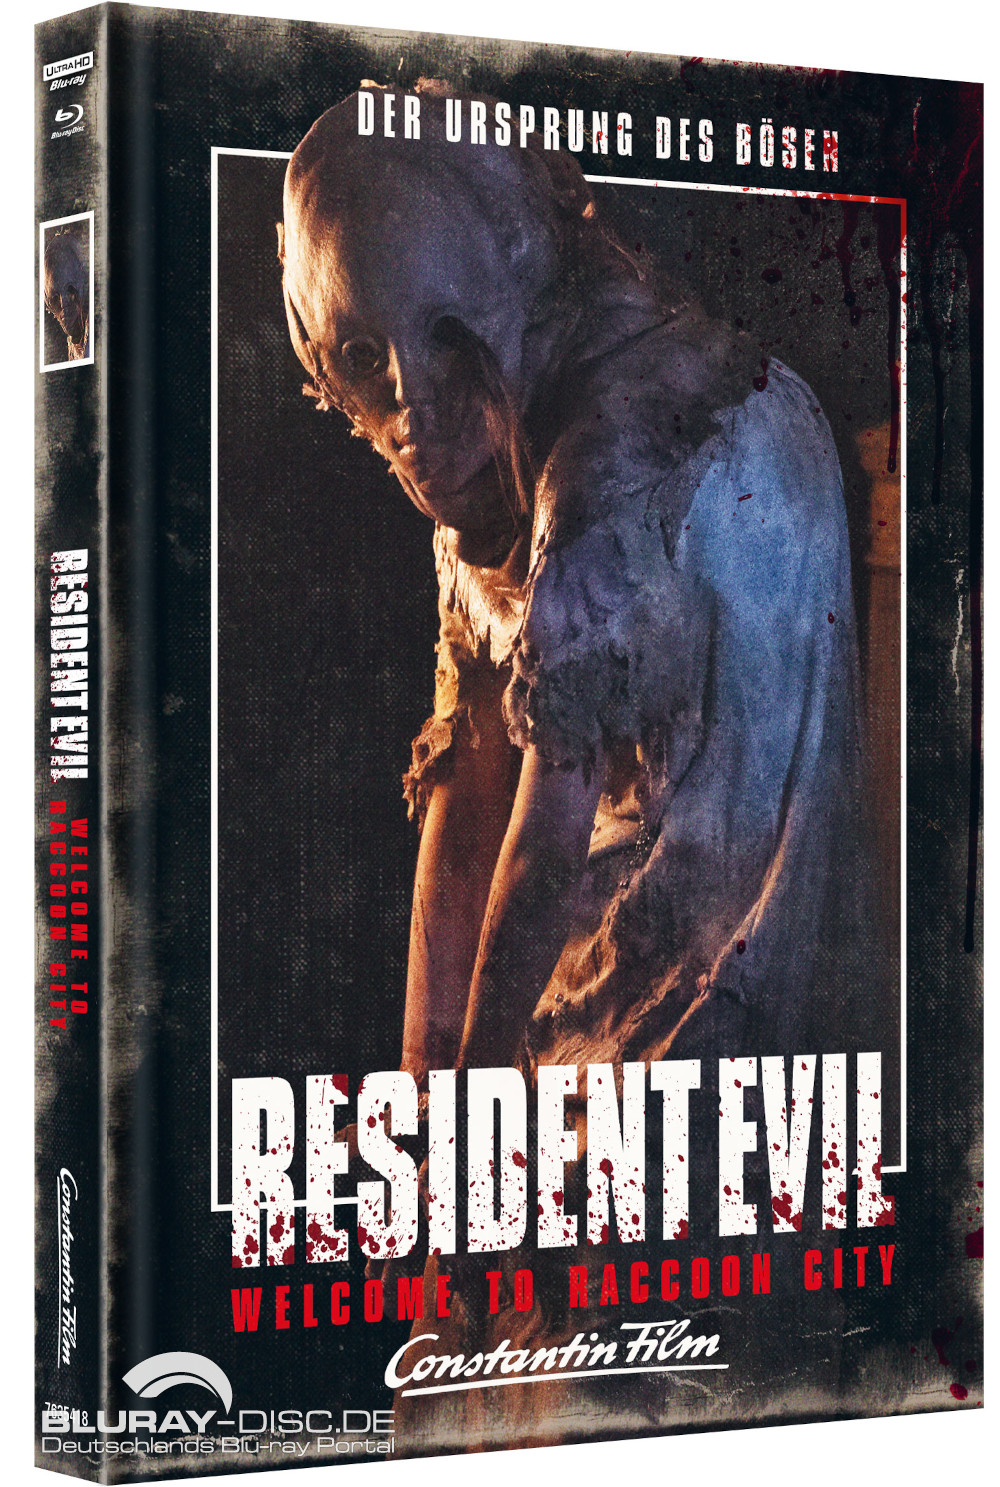 Resident-Evil-Welcome-to-Raccoon-City-4K-Mediabook-C-Galerie-01.jpg